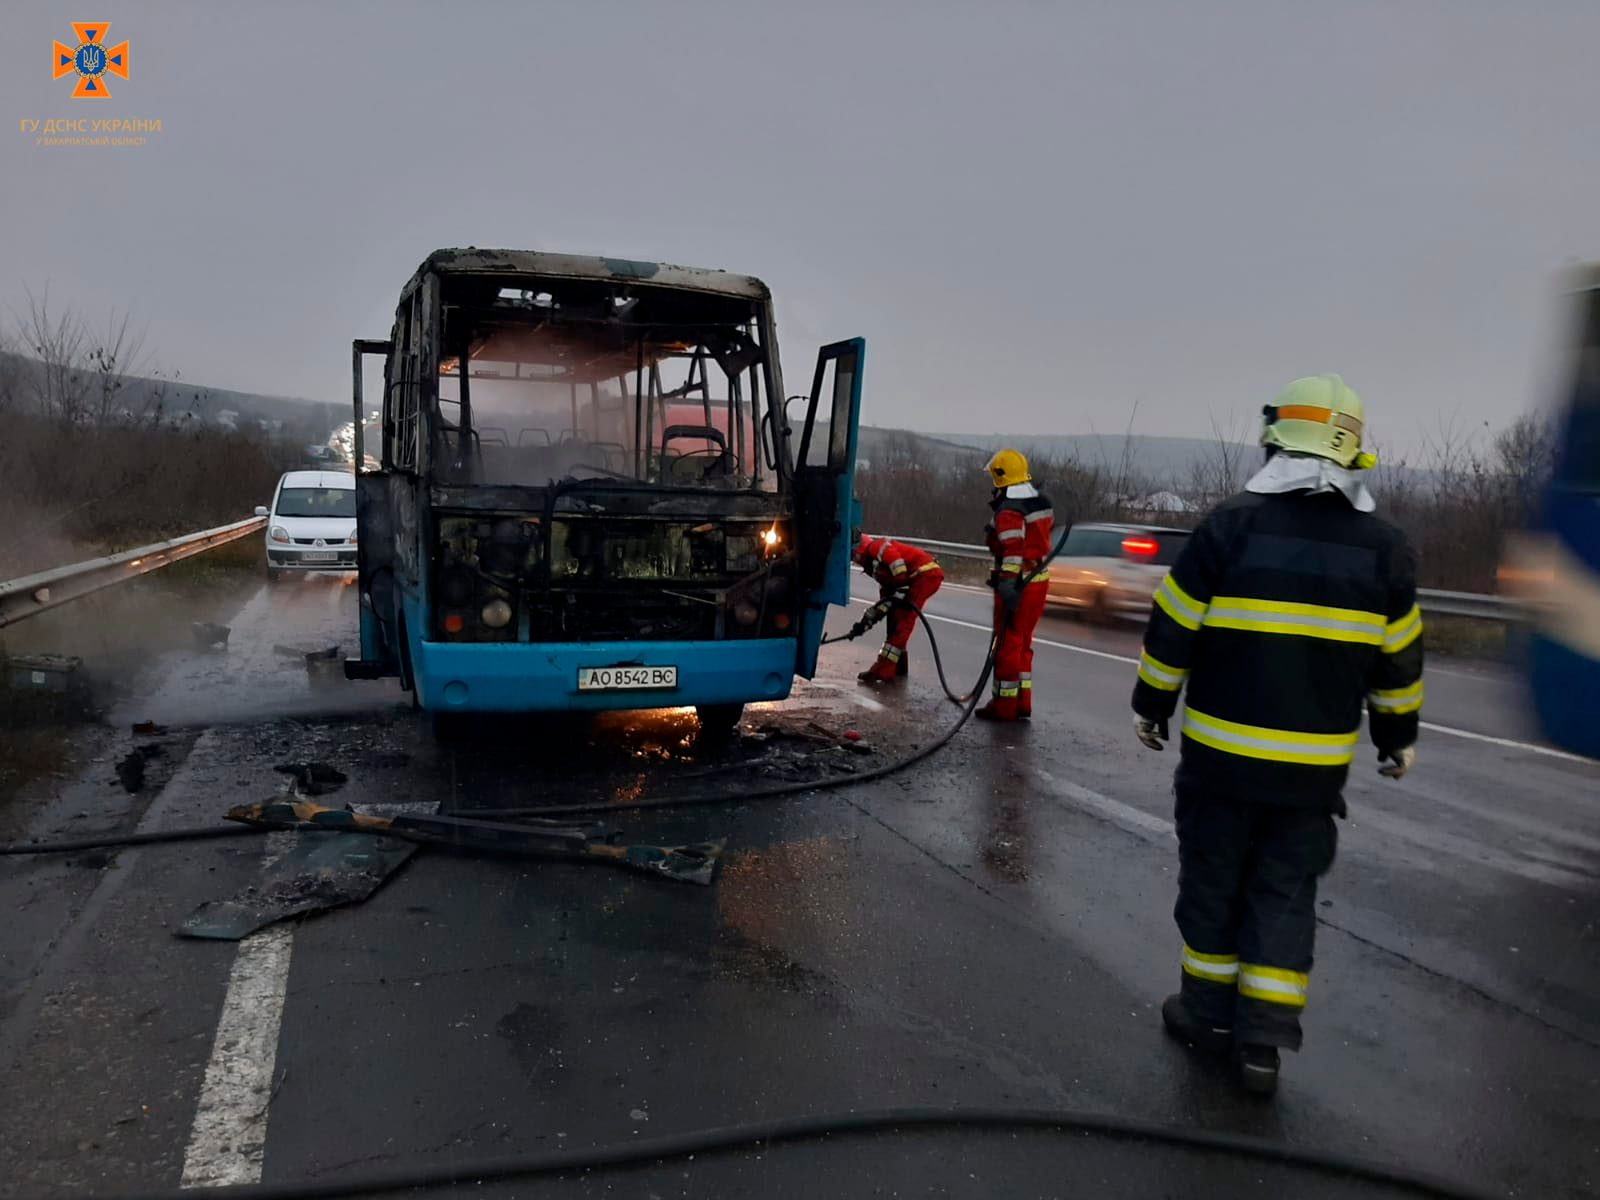 Постраждалих нема: рятувальники розповіли про пожежу в автобусі